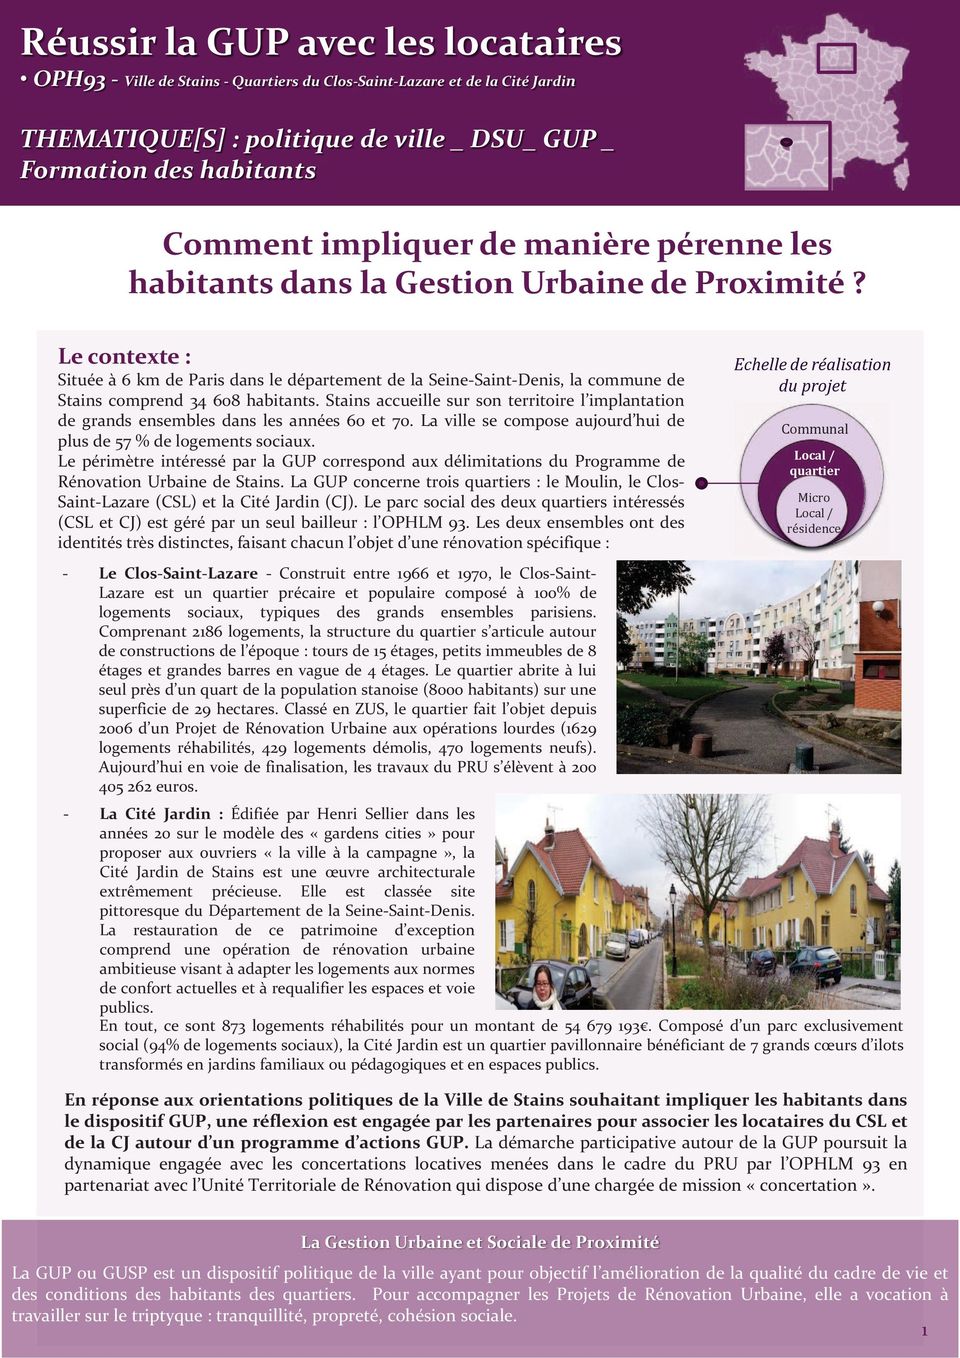 Le contexte : Située à 6 km de Paris dans le département de la Seine-Saint-Denis, la commune de Stains comprend 34 608 habitants.